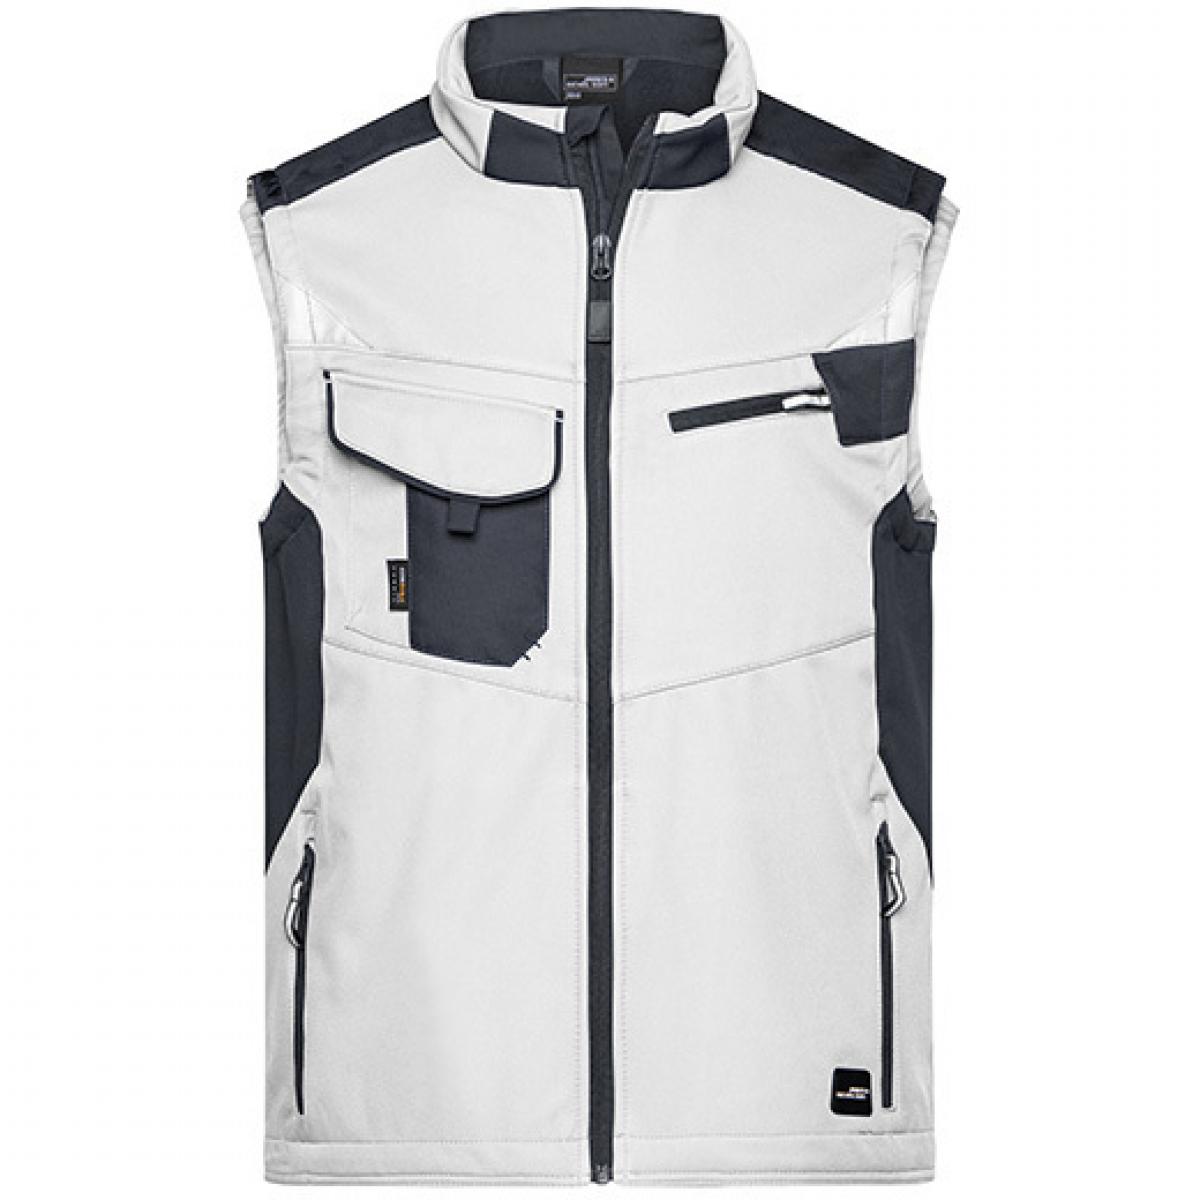 Hersteller: James+Nicholson Herstellernummer: JN845 Artikelbezeichnung: Herren Jacke, Workwear Softshell Vest -STRONG- Farbe: White/Carbon